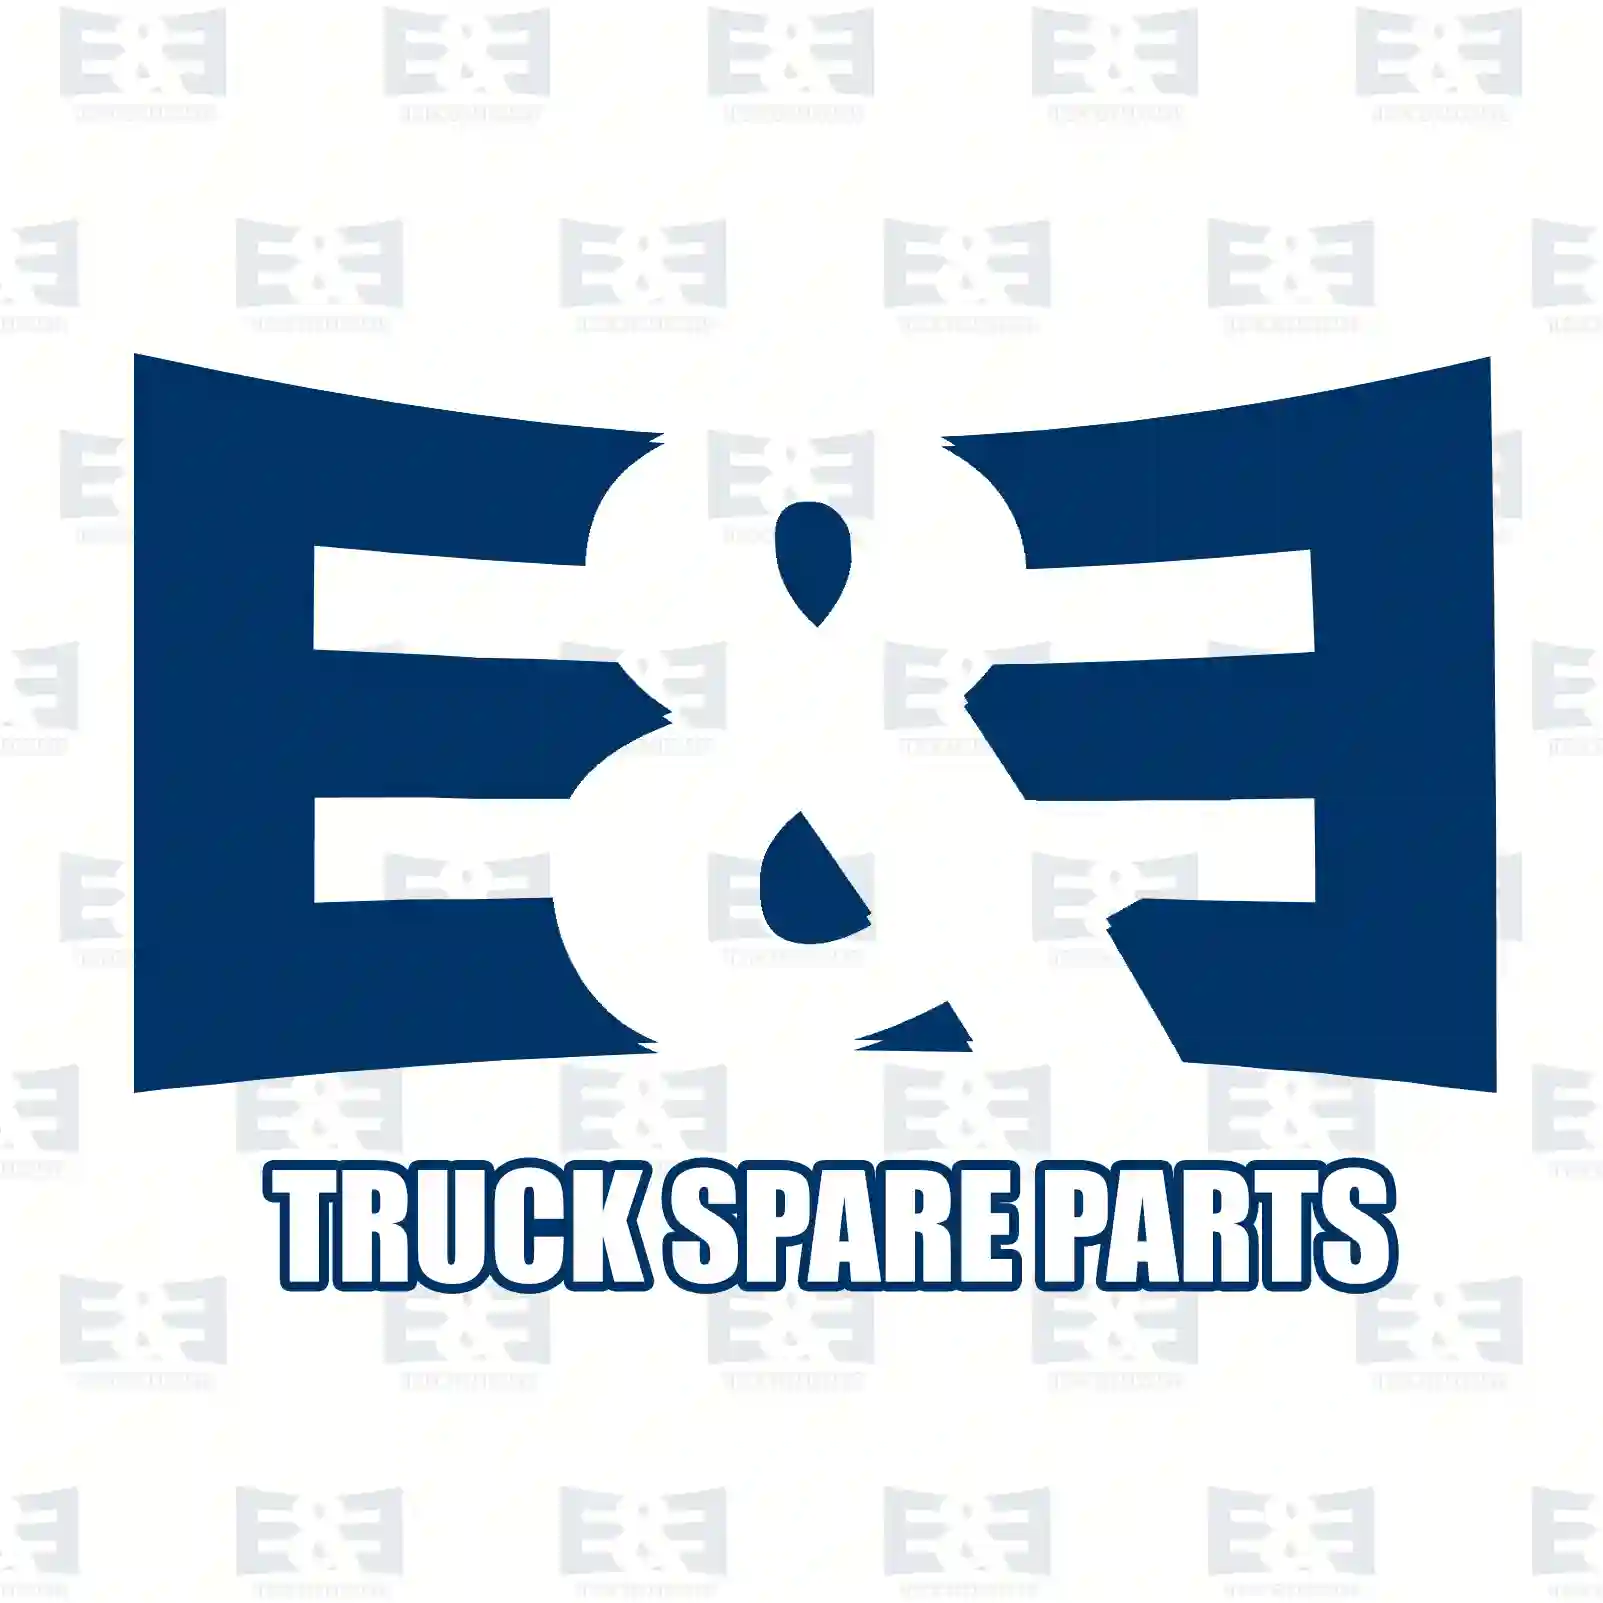 Seat adjustment, 2E2275697, 7421592929, 21592 ||  2E2275697 E&E Truck Spare Parts | Truck Spare Parts, Auotomotive Spare Parts Seat adjustment, 2E2275697, 7421592929, 21592 ||  2E2275697 E&E Truck Spare Parts | Truck Spare Parts, Auotomotive Spare Parts